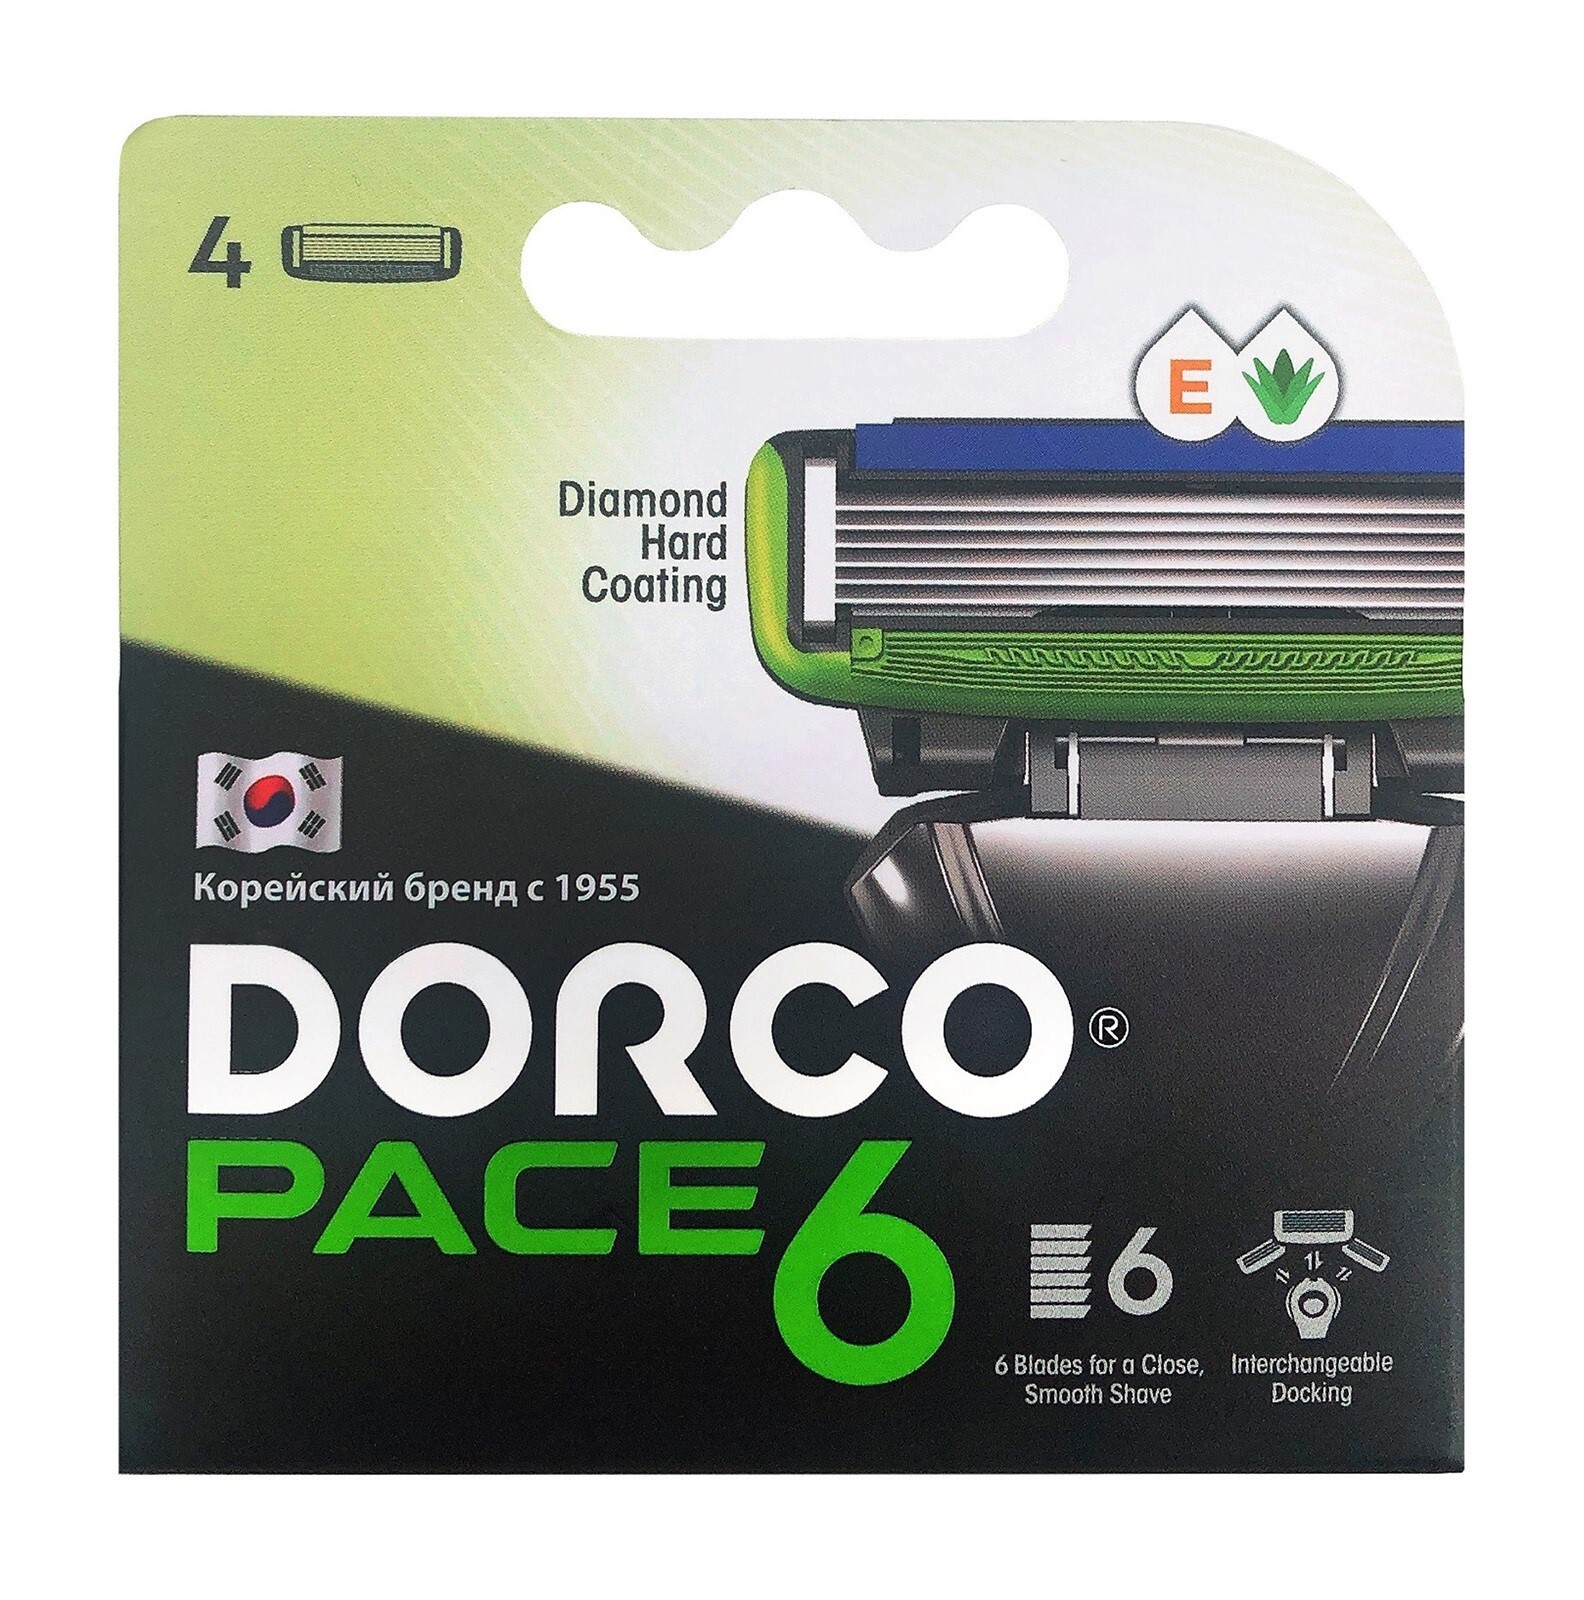 Кассеты dorco. Dorco Pace 6 кассеты. Сменные кассеты Dorco Pace 6 Plus. Pace 4 бритва кассеты. Сменные кассеты Dorco Pace 3.